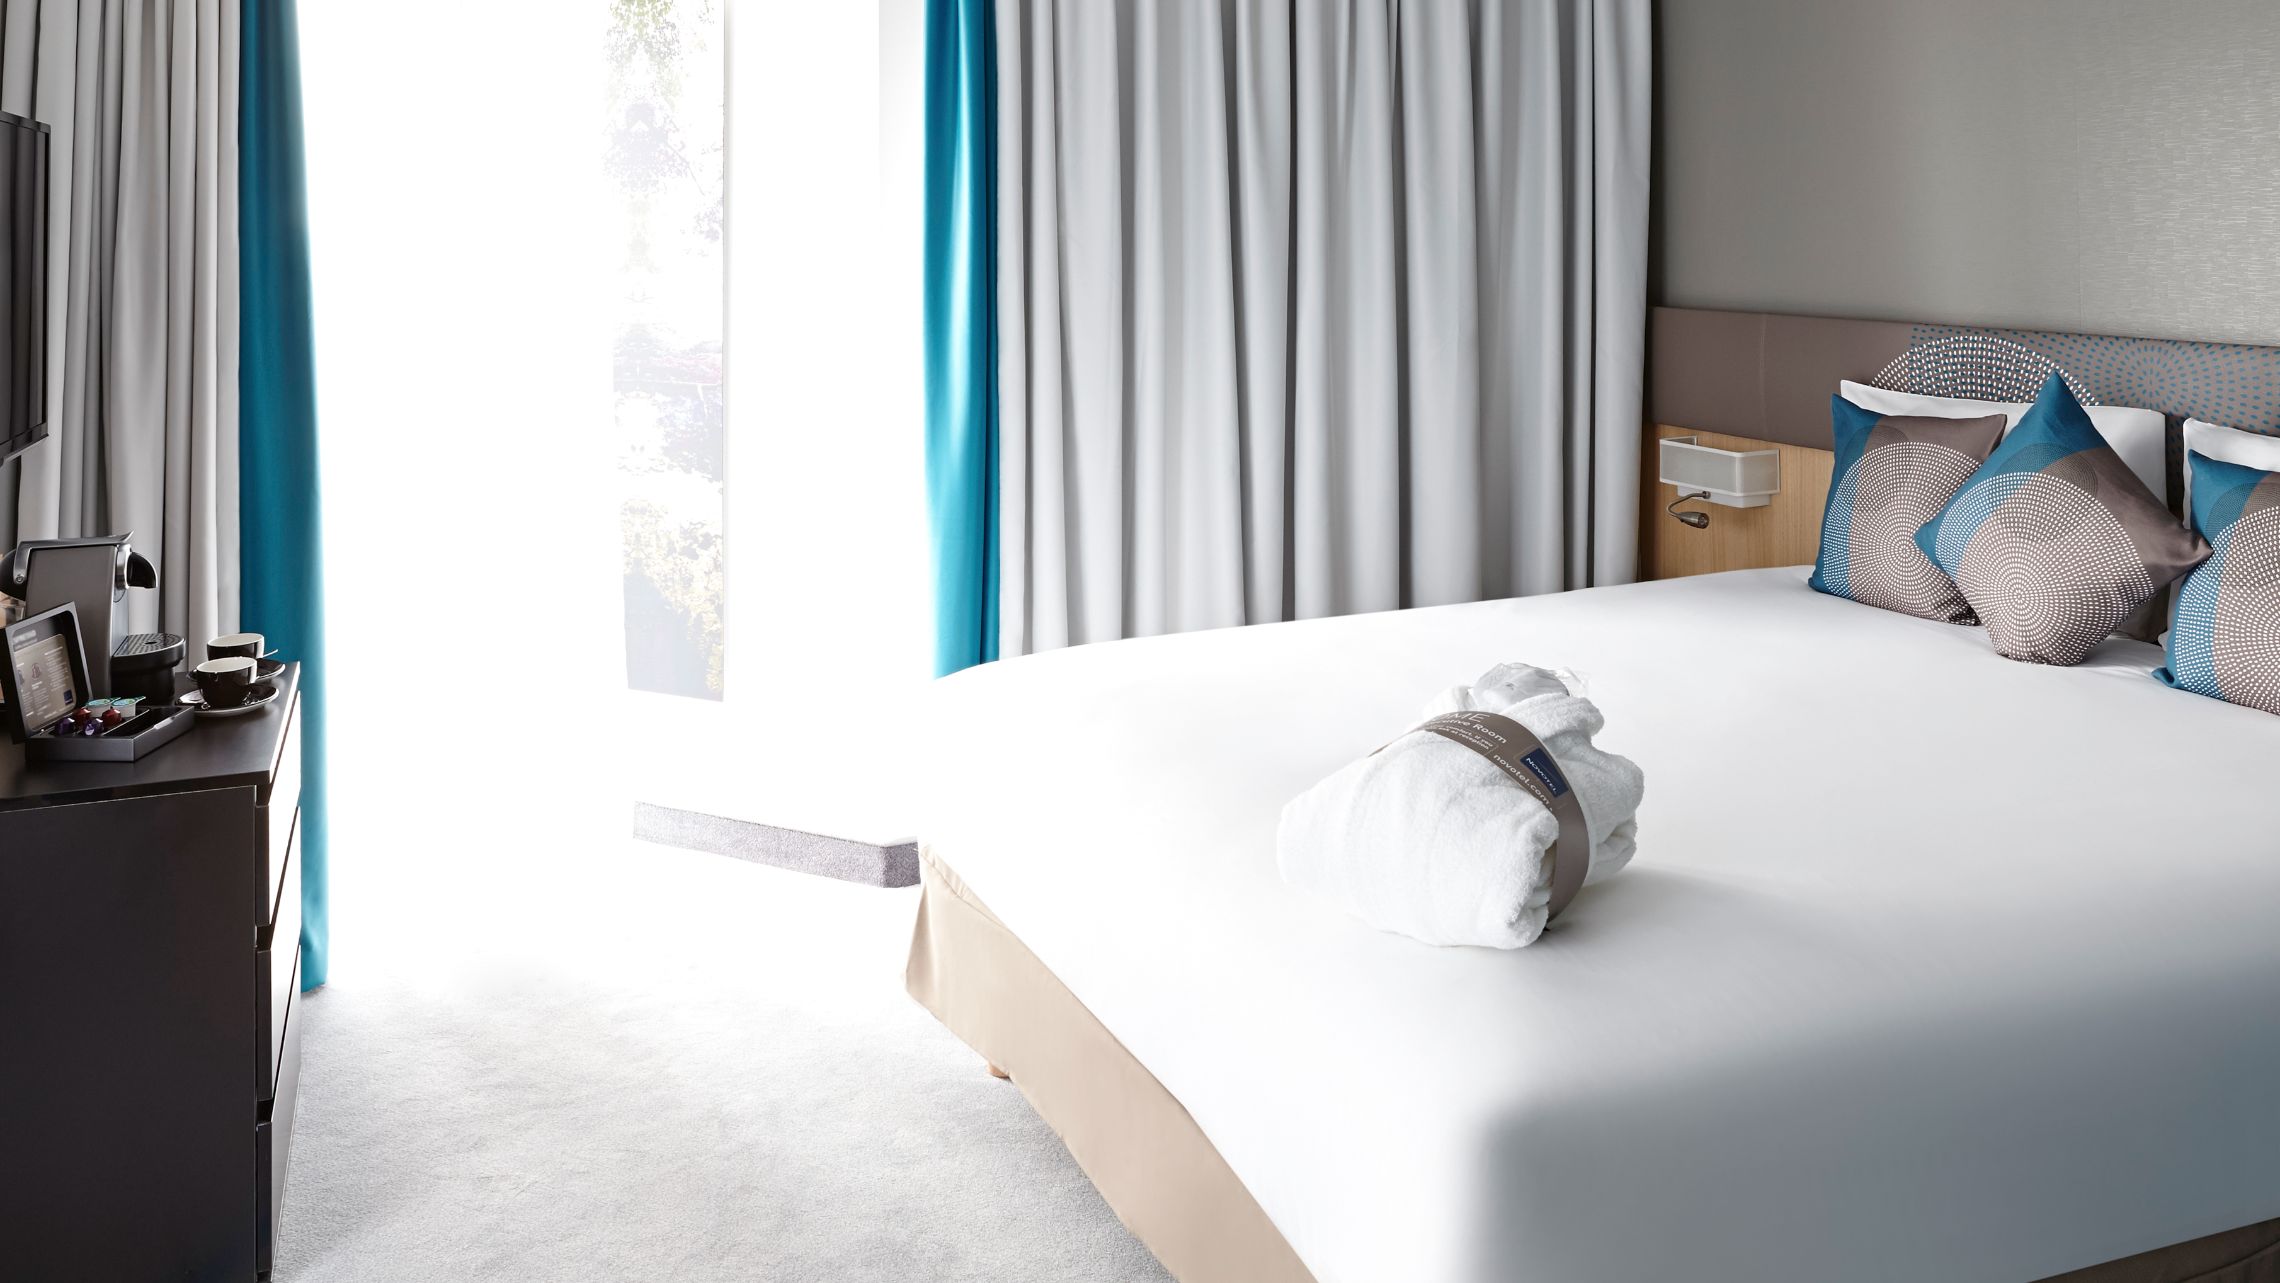 Hotel Bedroom in Novotel Property Development Wembley